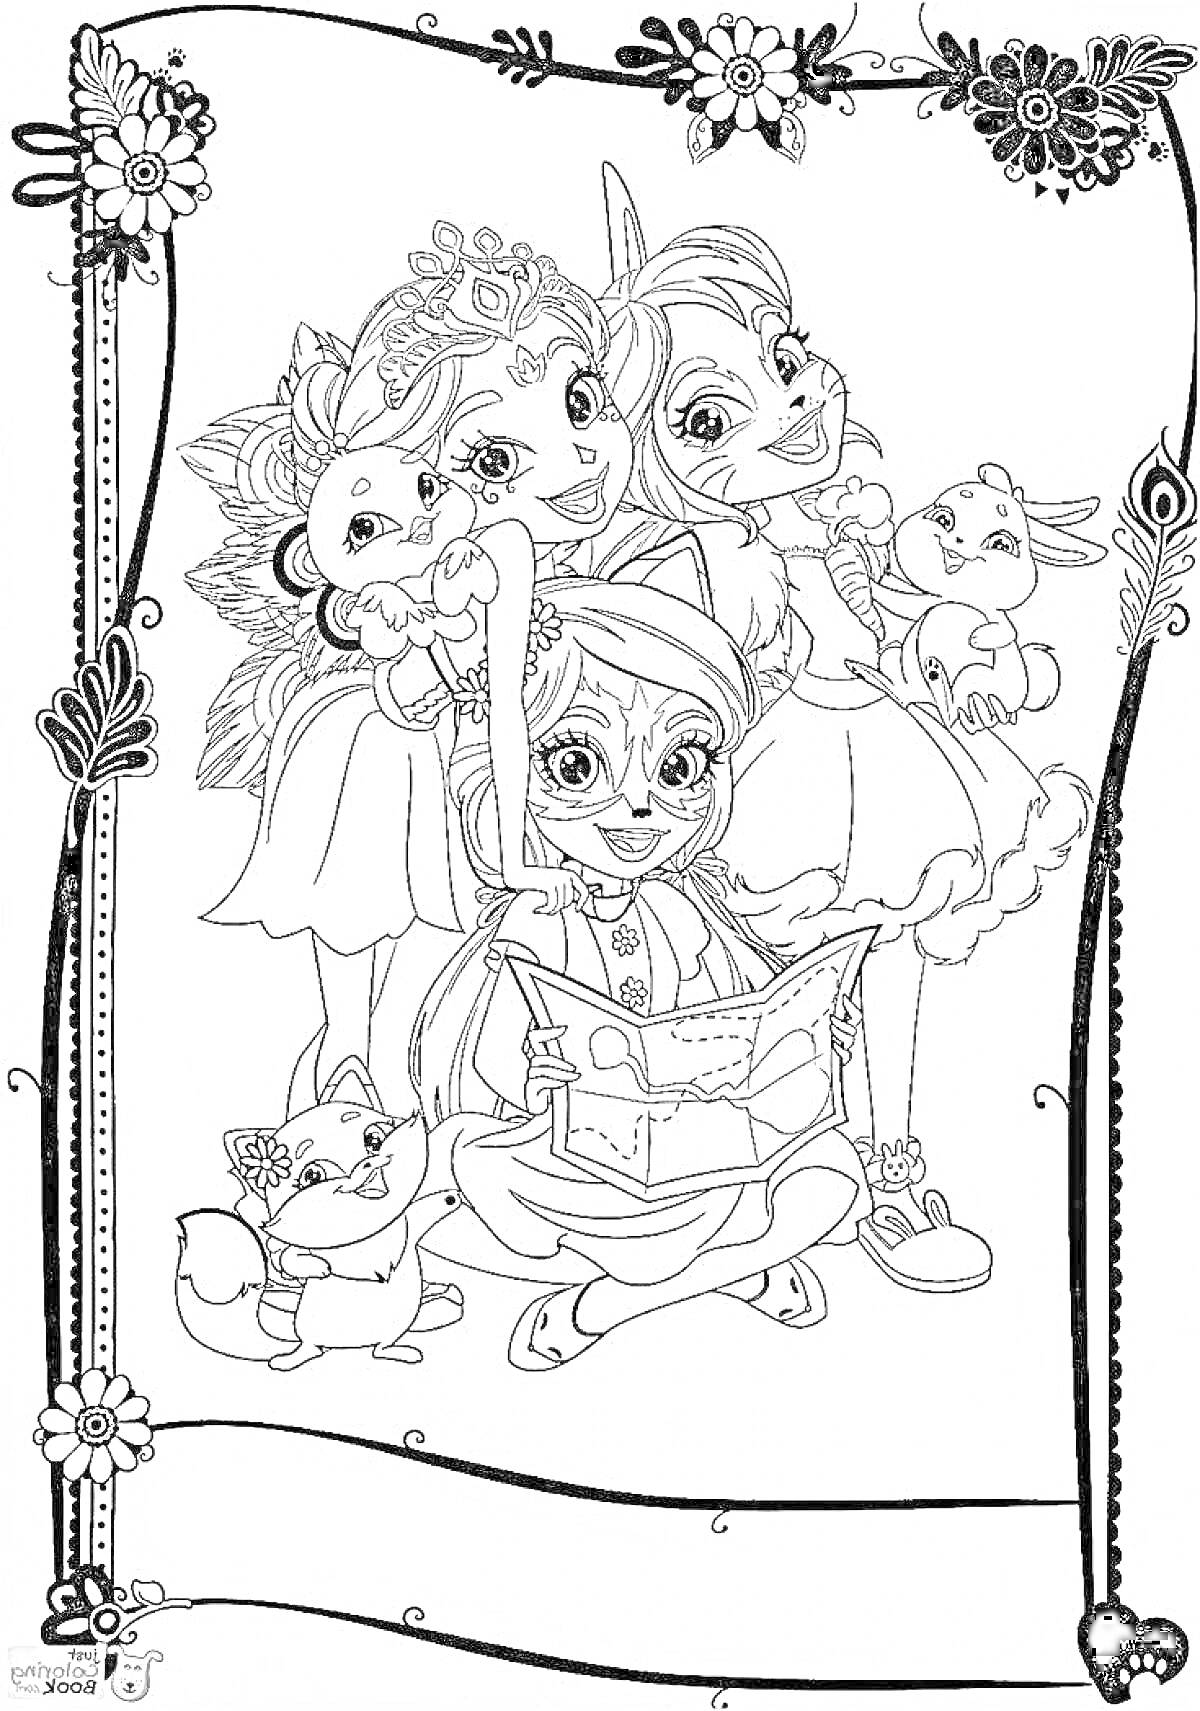 Раскраска трёх девушек с животными, одежда и ушки как у животных, книга, цветочная рамка